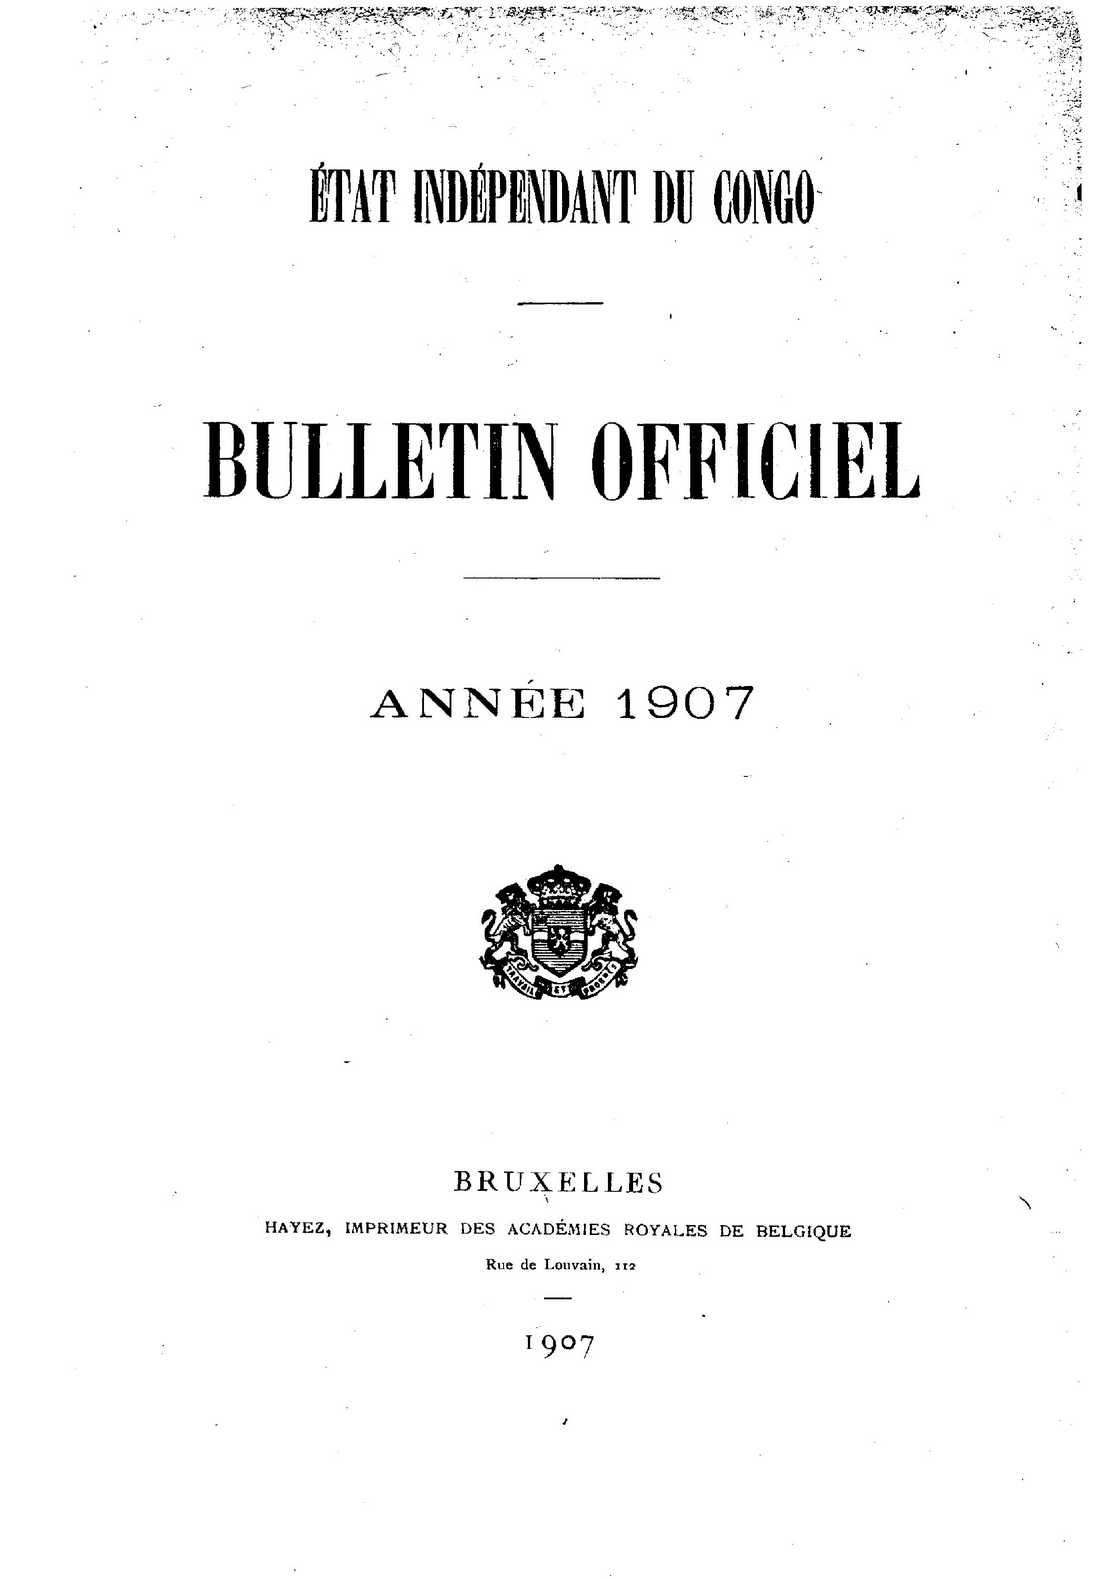 Book cover 202106132422: Etat Indépendant du Congo - roi Léopold II | Etat Indépendant du Congo - Bulletin Officiel – Année 1907